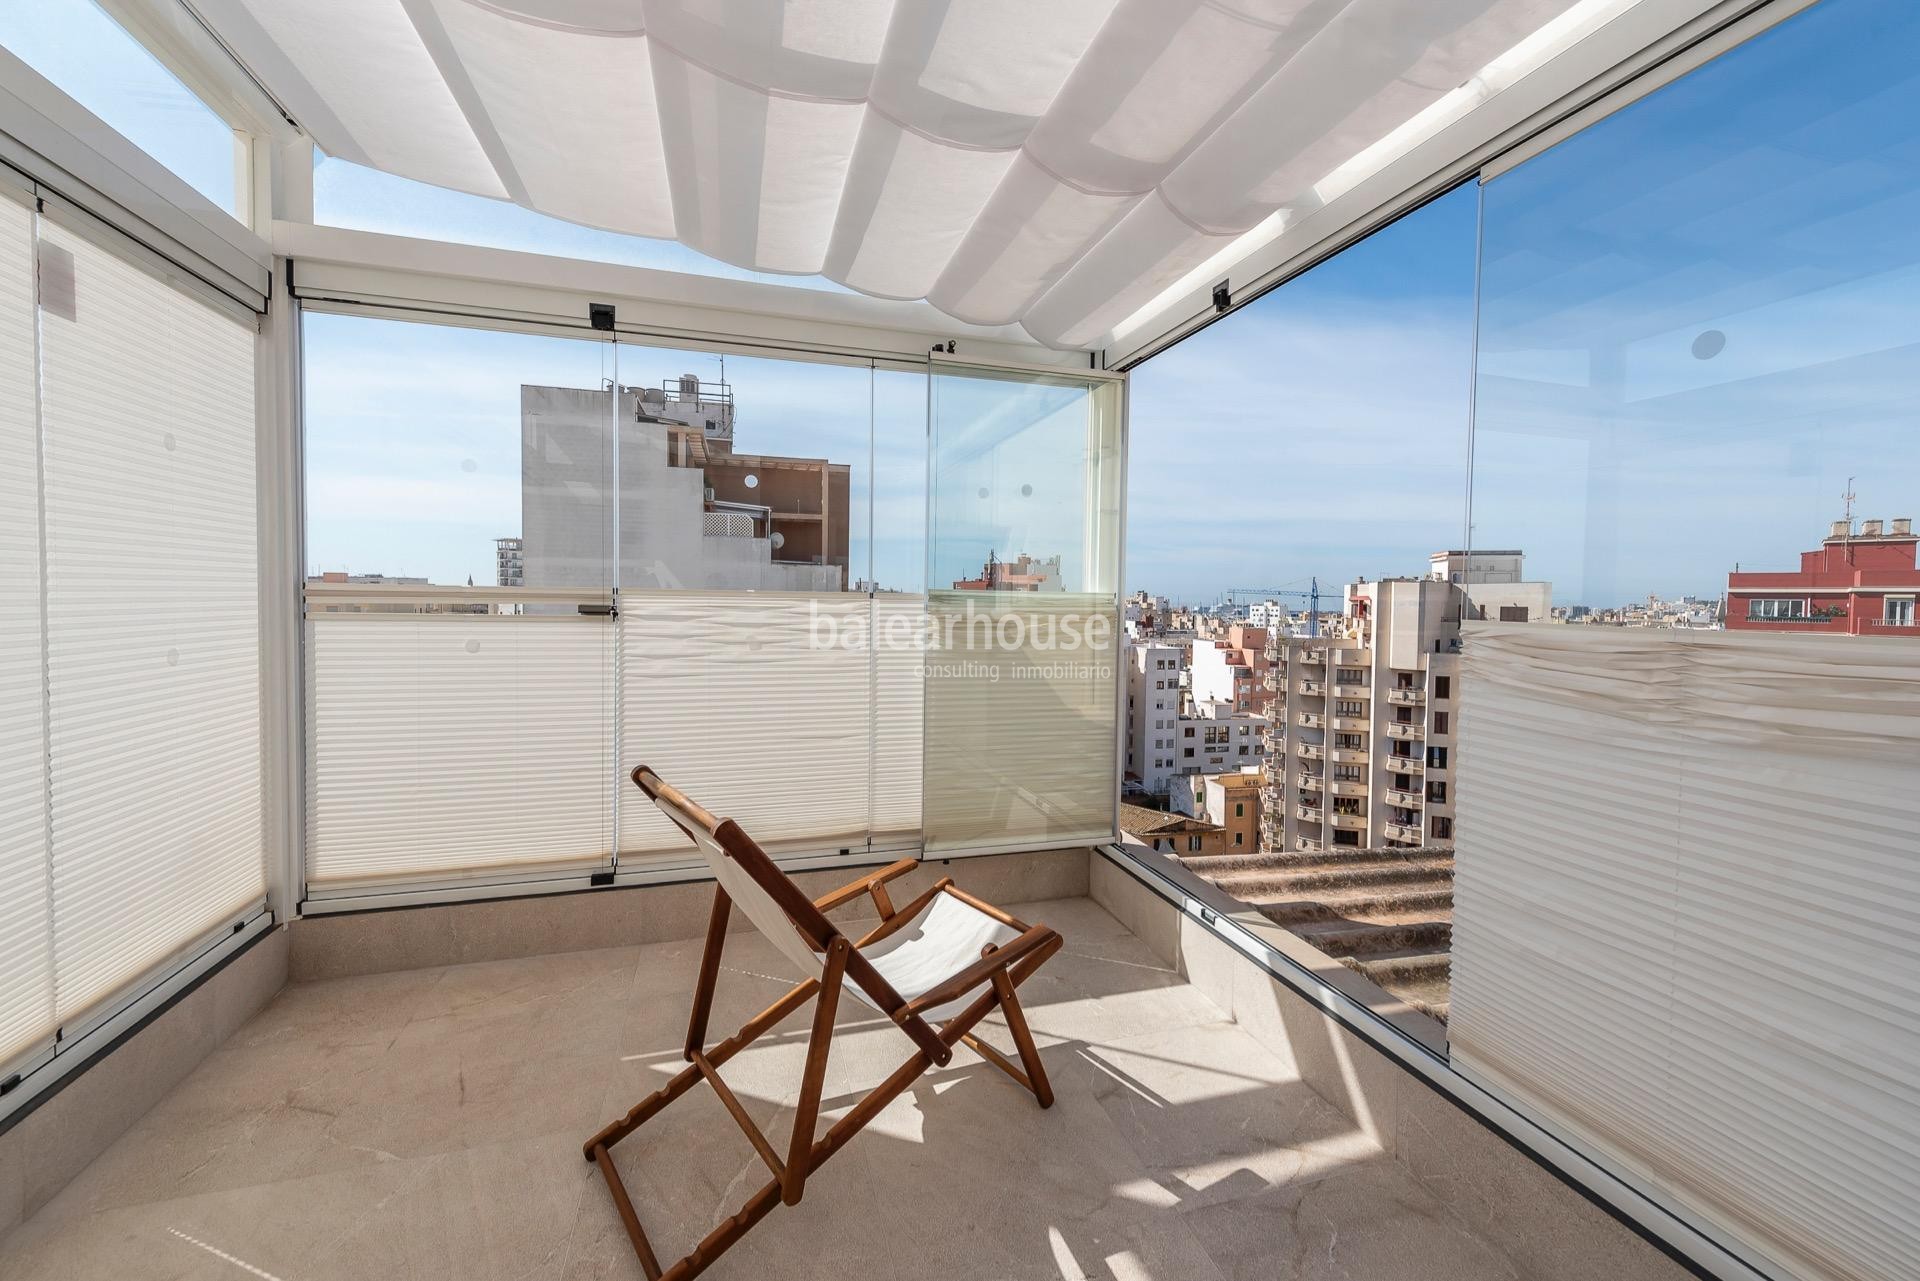 Helles renoviertes Penthouse mit schönem modernem Design und großer Terrasse im Zentrum von Palma